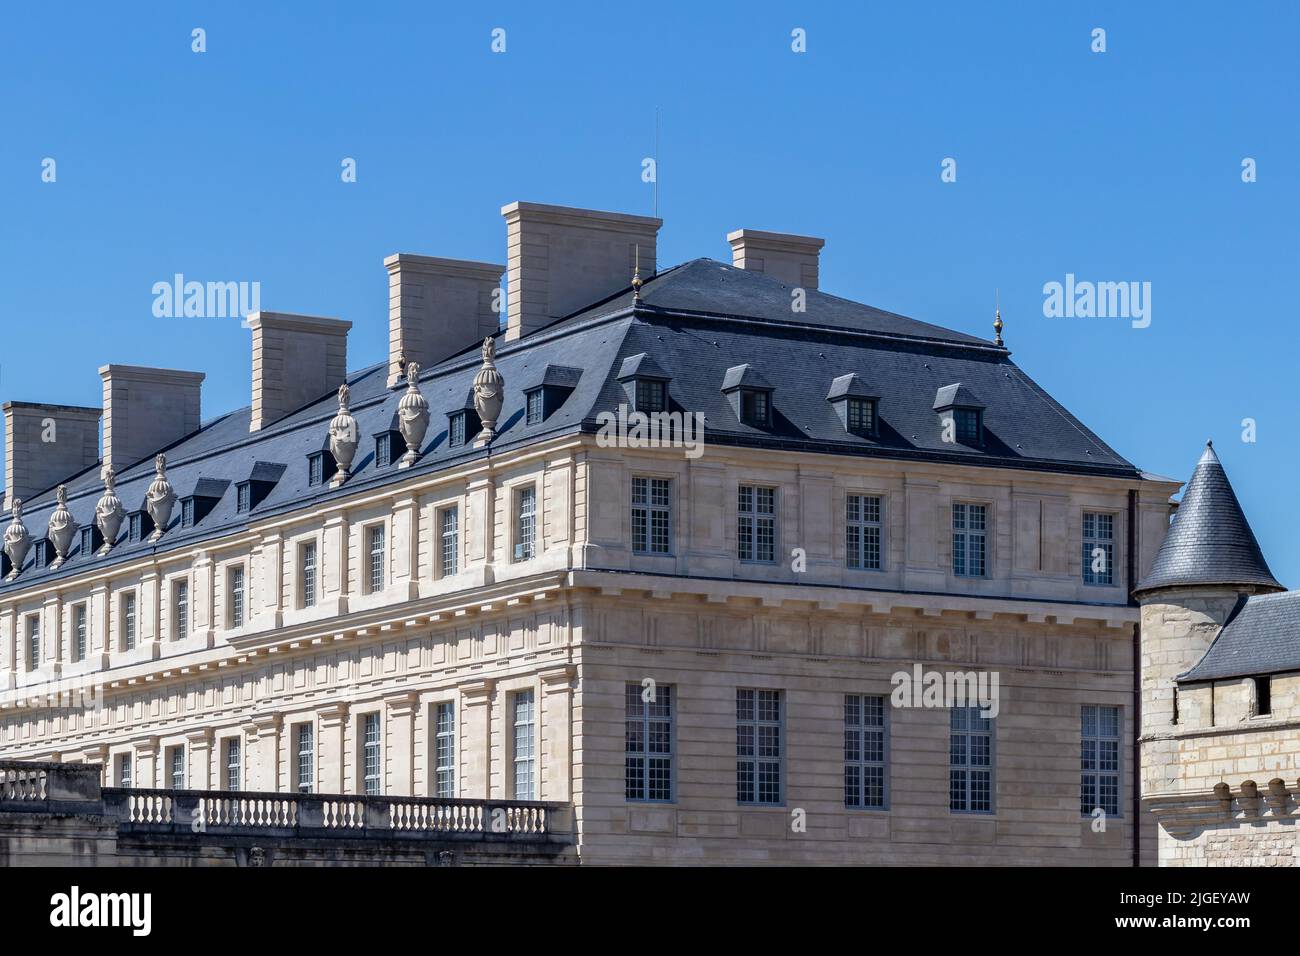 VINCENNES/FRANCE - JUNE 22, 2019: View of Pavillon du Roi in Chateau de Vincennes village near Paris in France Stock Photo